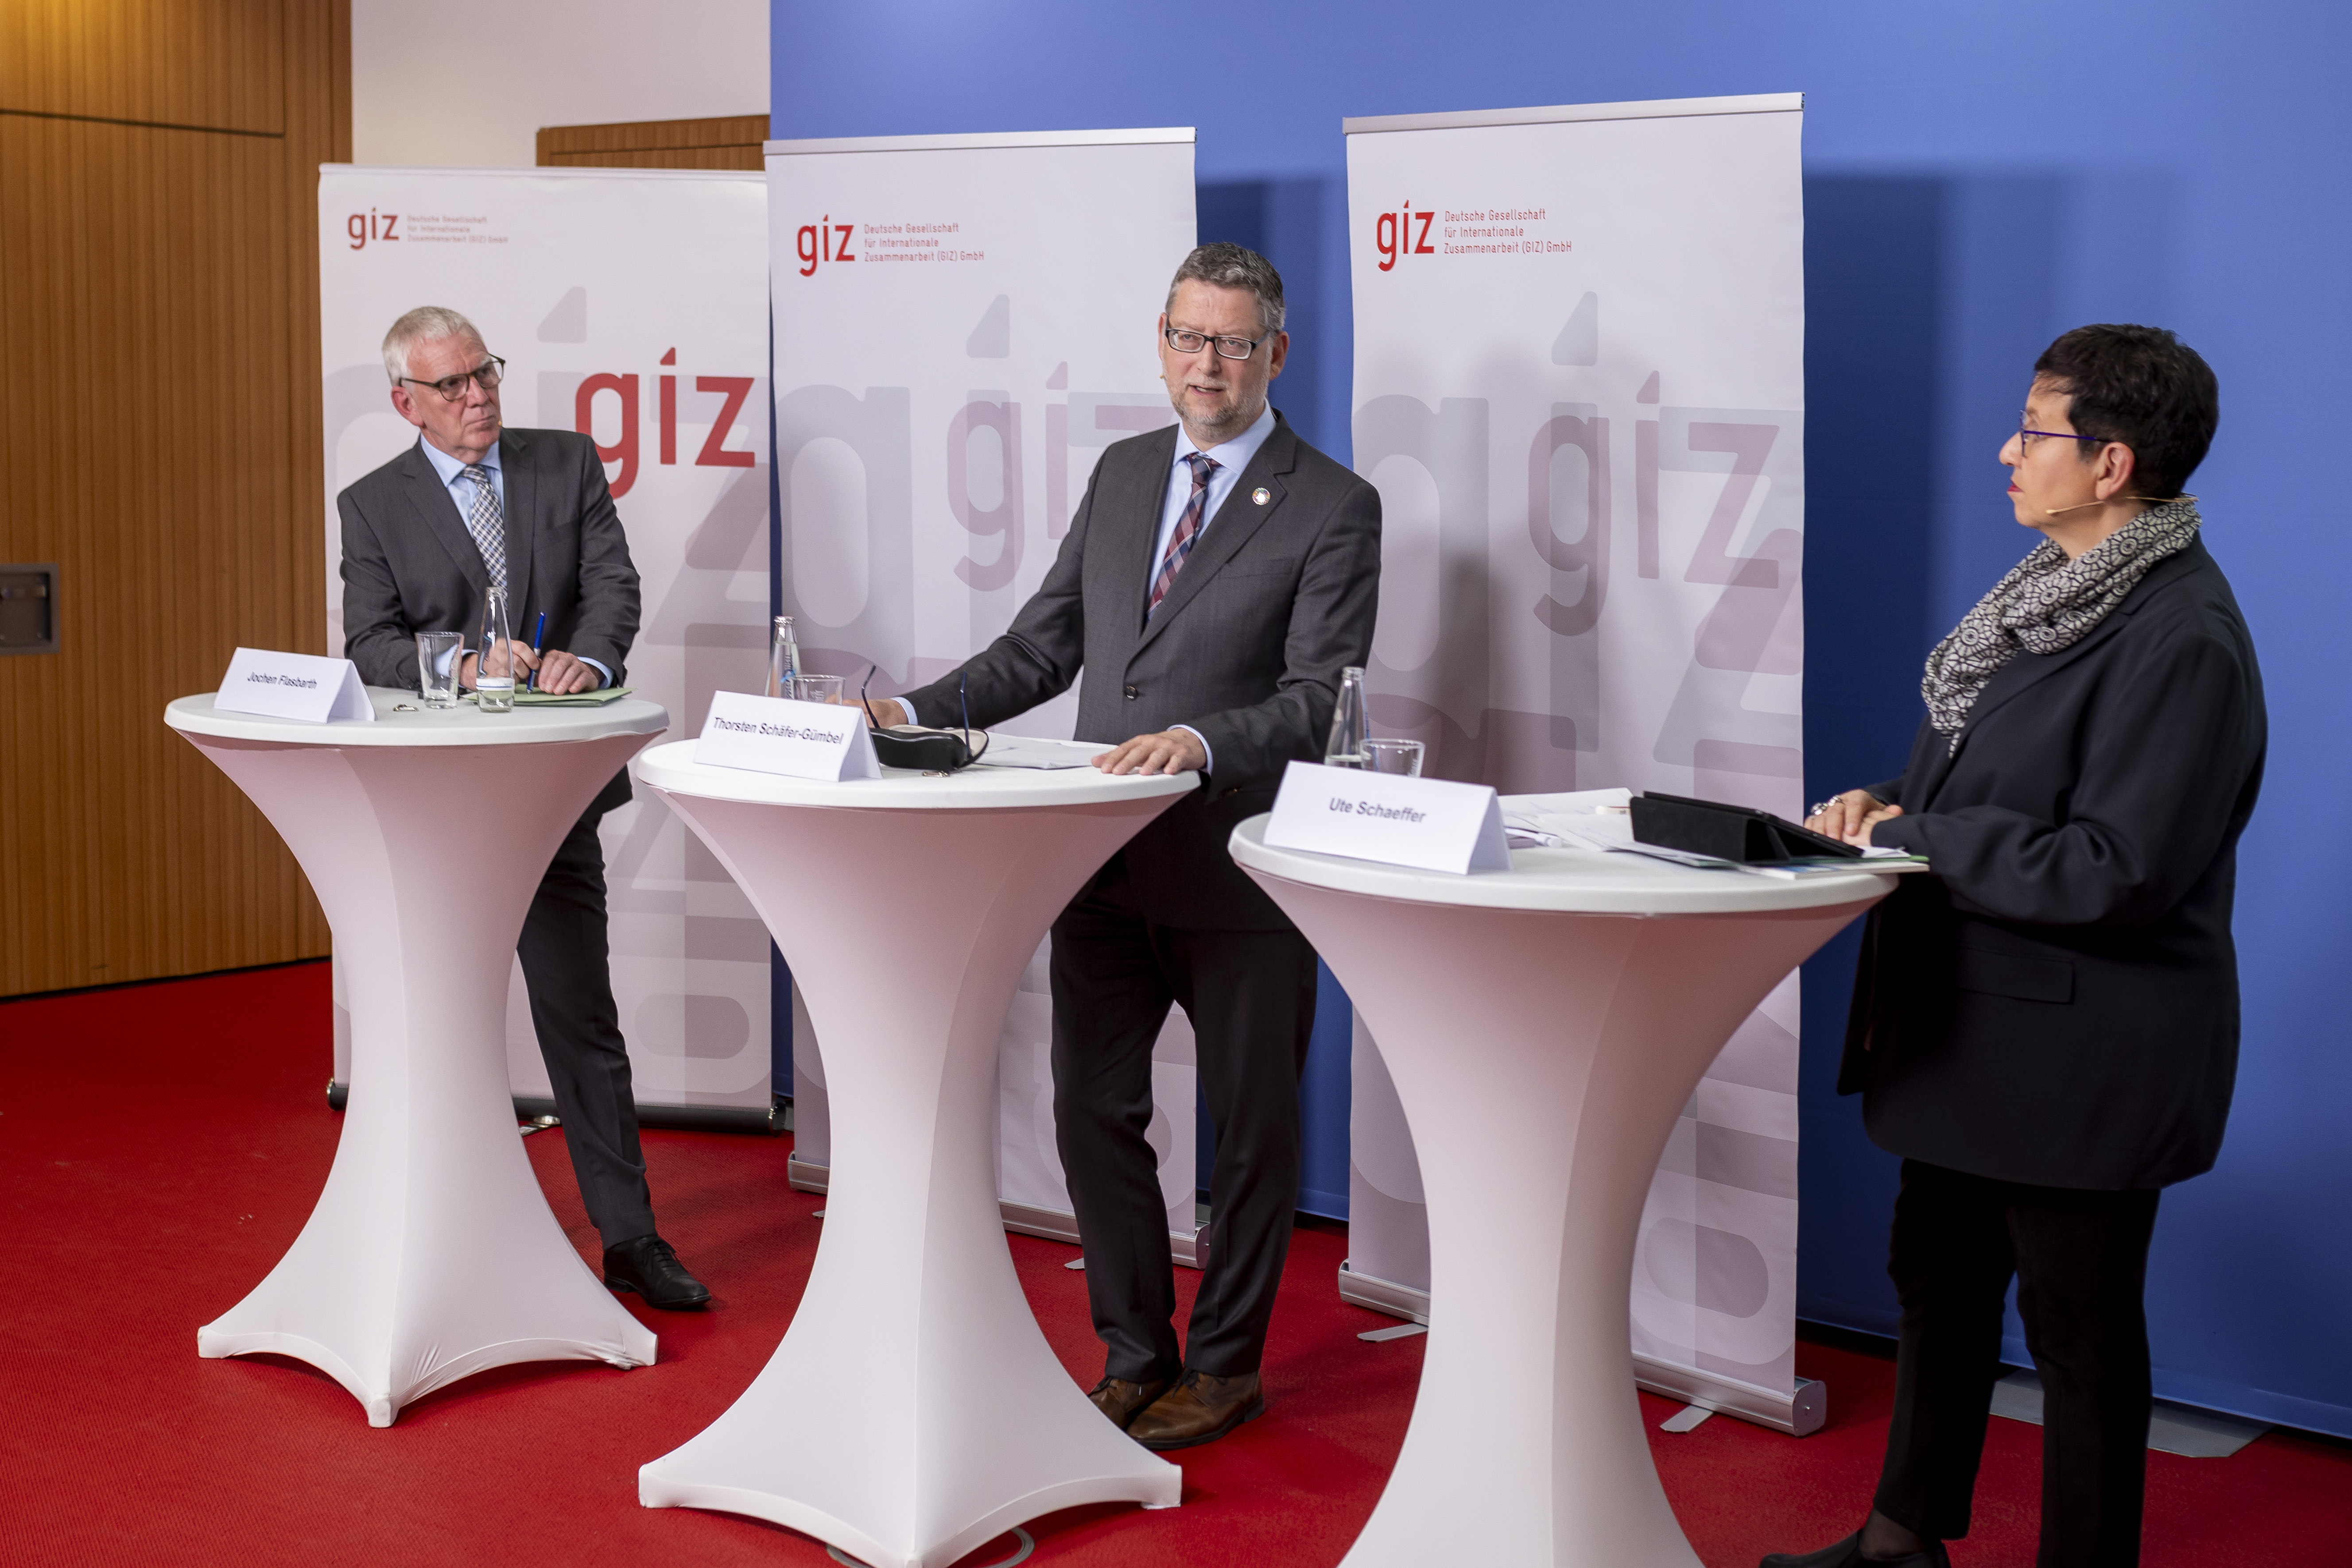 Jochen Flasbarth, Thorsten Schäfer-Gümbel and Ute Schaeffer at speaker's desks in front of GIZ banners.